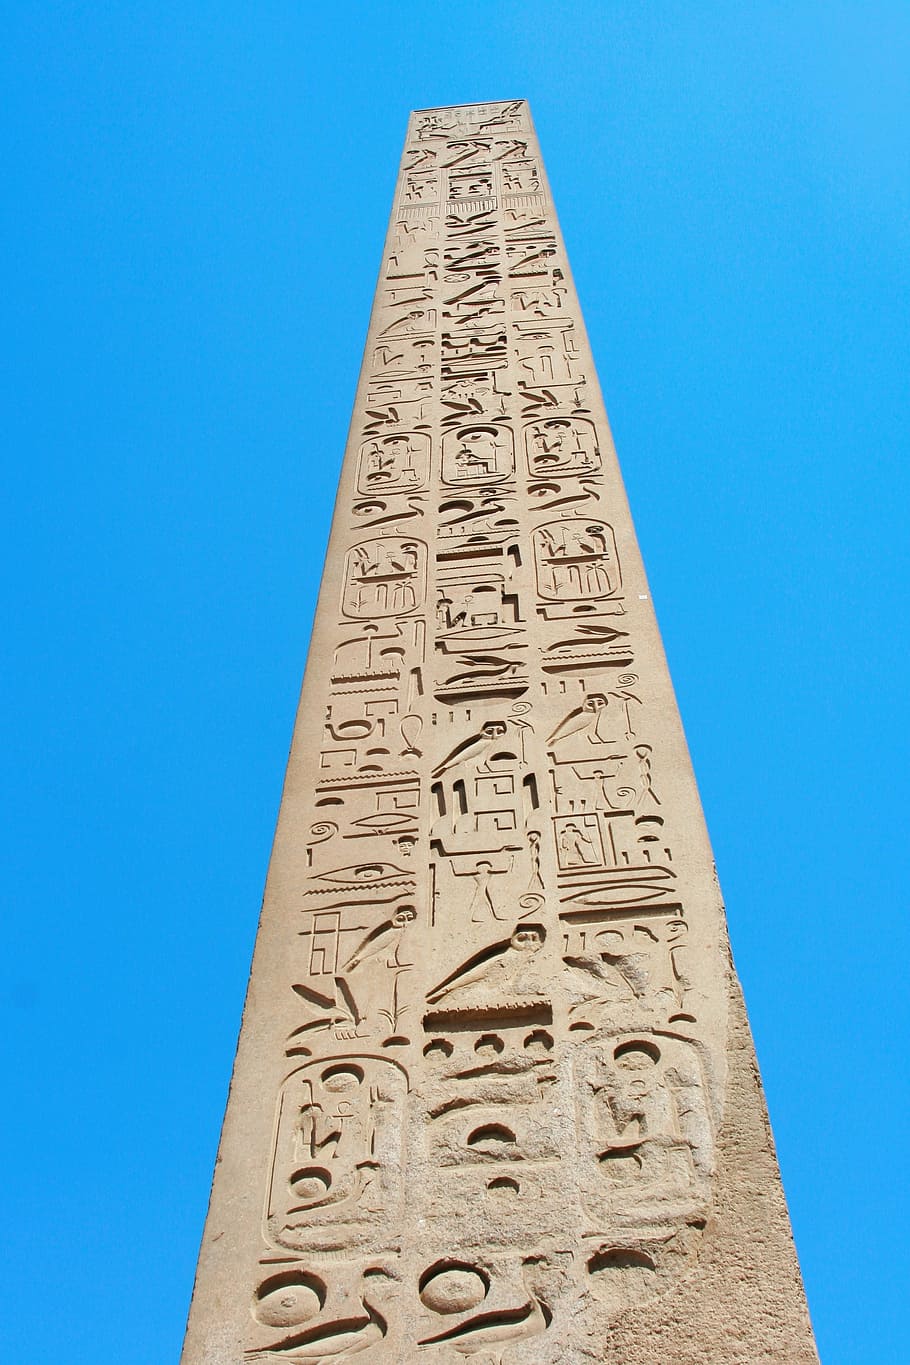 gusano, vista de ojo, torre, Egipto, Luxor, templo de Karnak, obelisco, jeroglífico, antigua, civilización